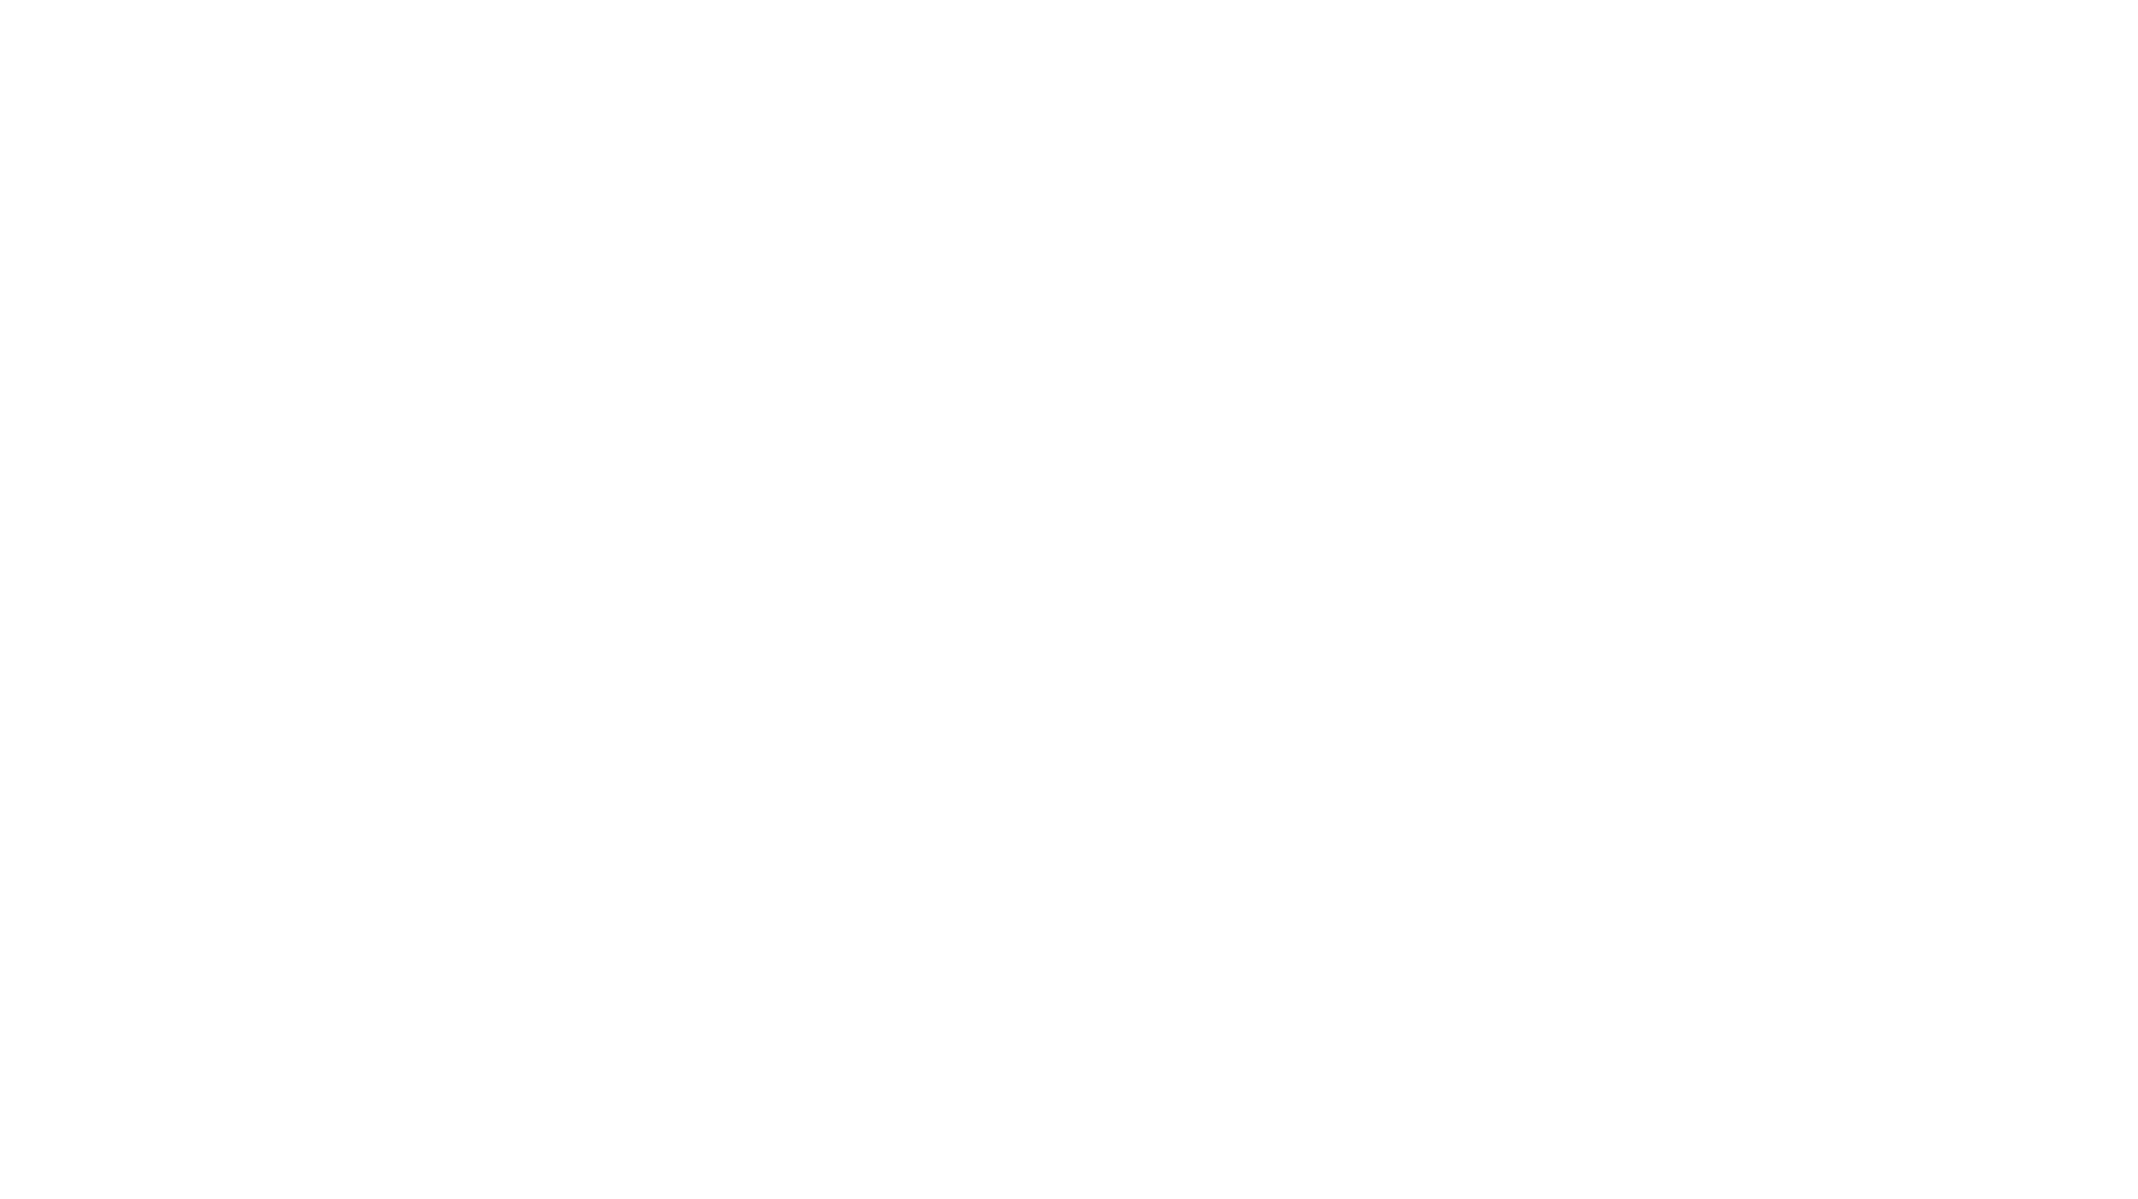 Cxsaber Promo: Flash Sale 35% Off